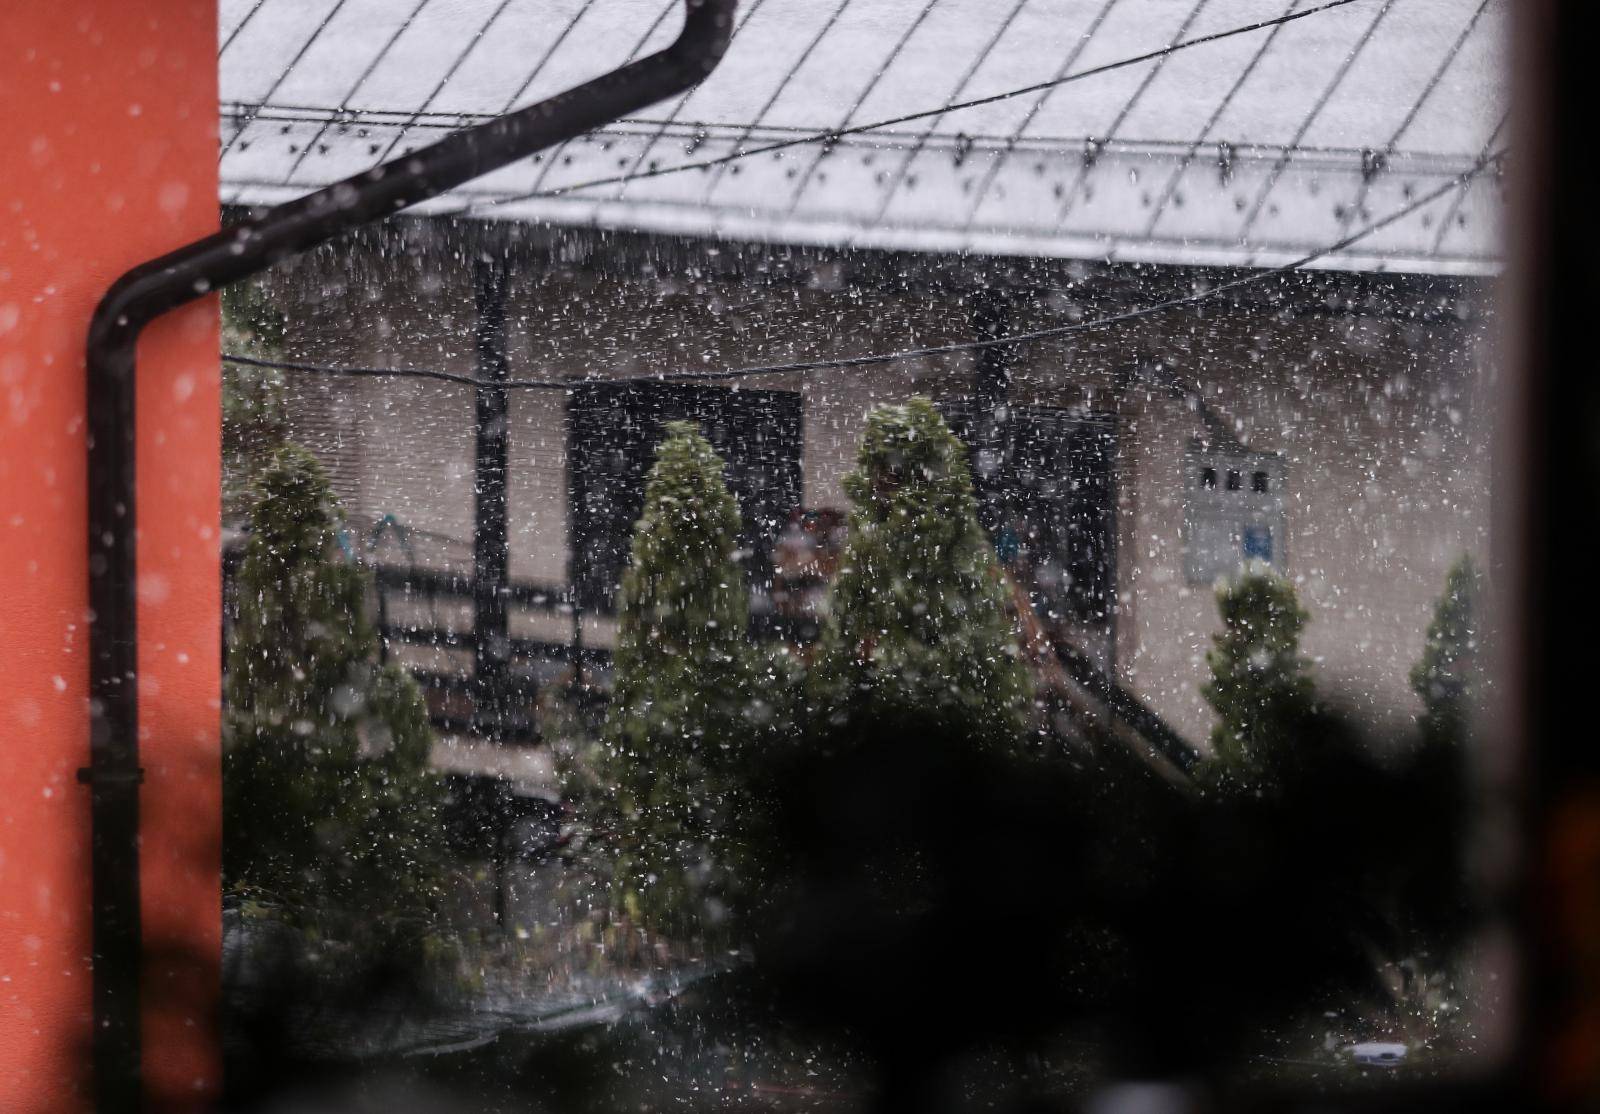 Ludo vrijeme! Jučer u Zagrebu 23 stupnja, a sada pada snijeg